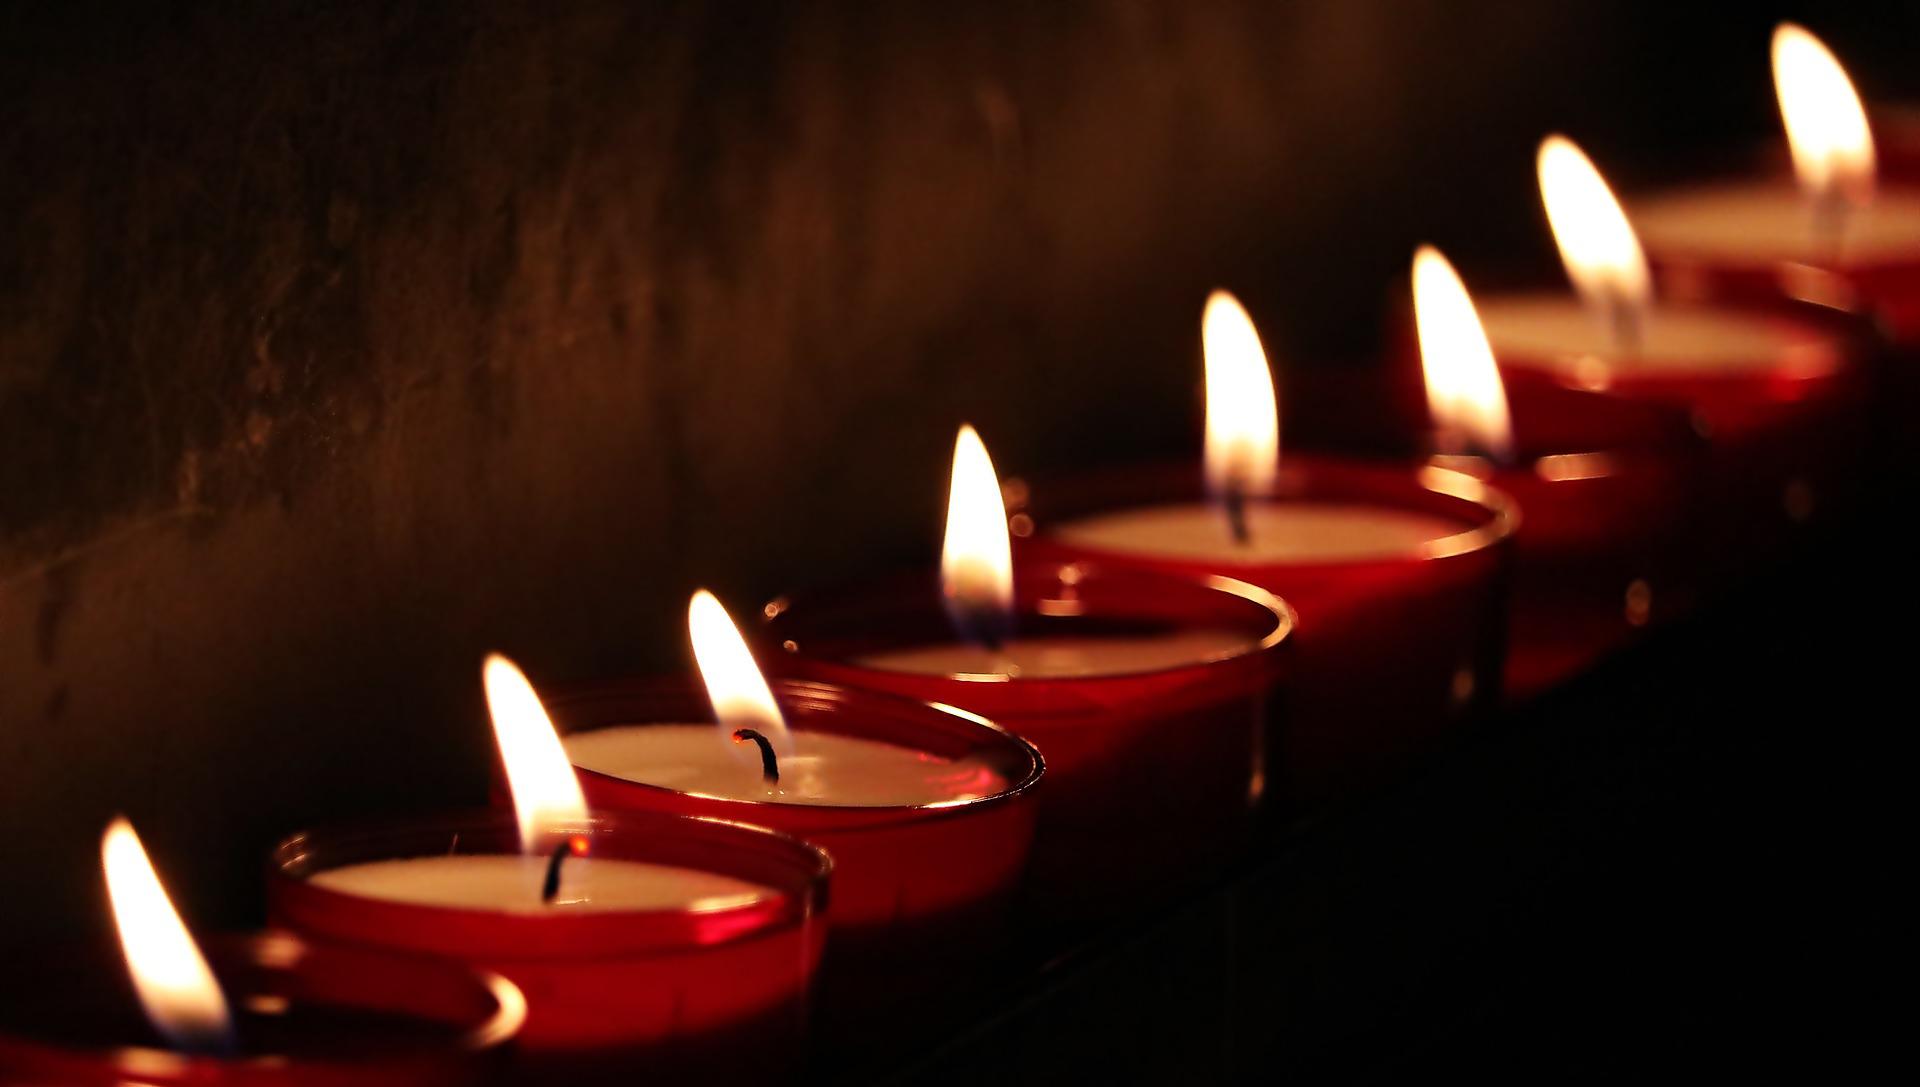 “Мы помним каждого”: кузбасский мэр почтил память погибших на “Распадской”